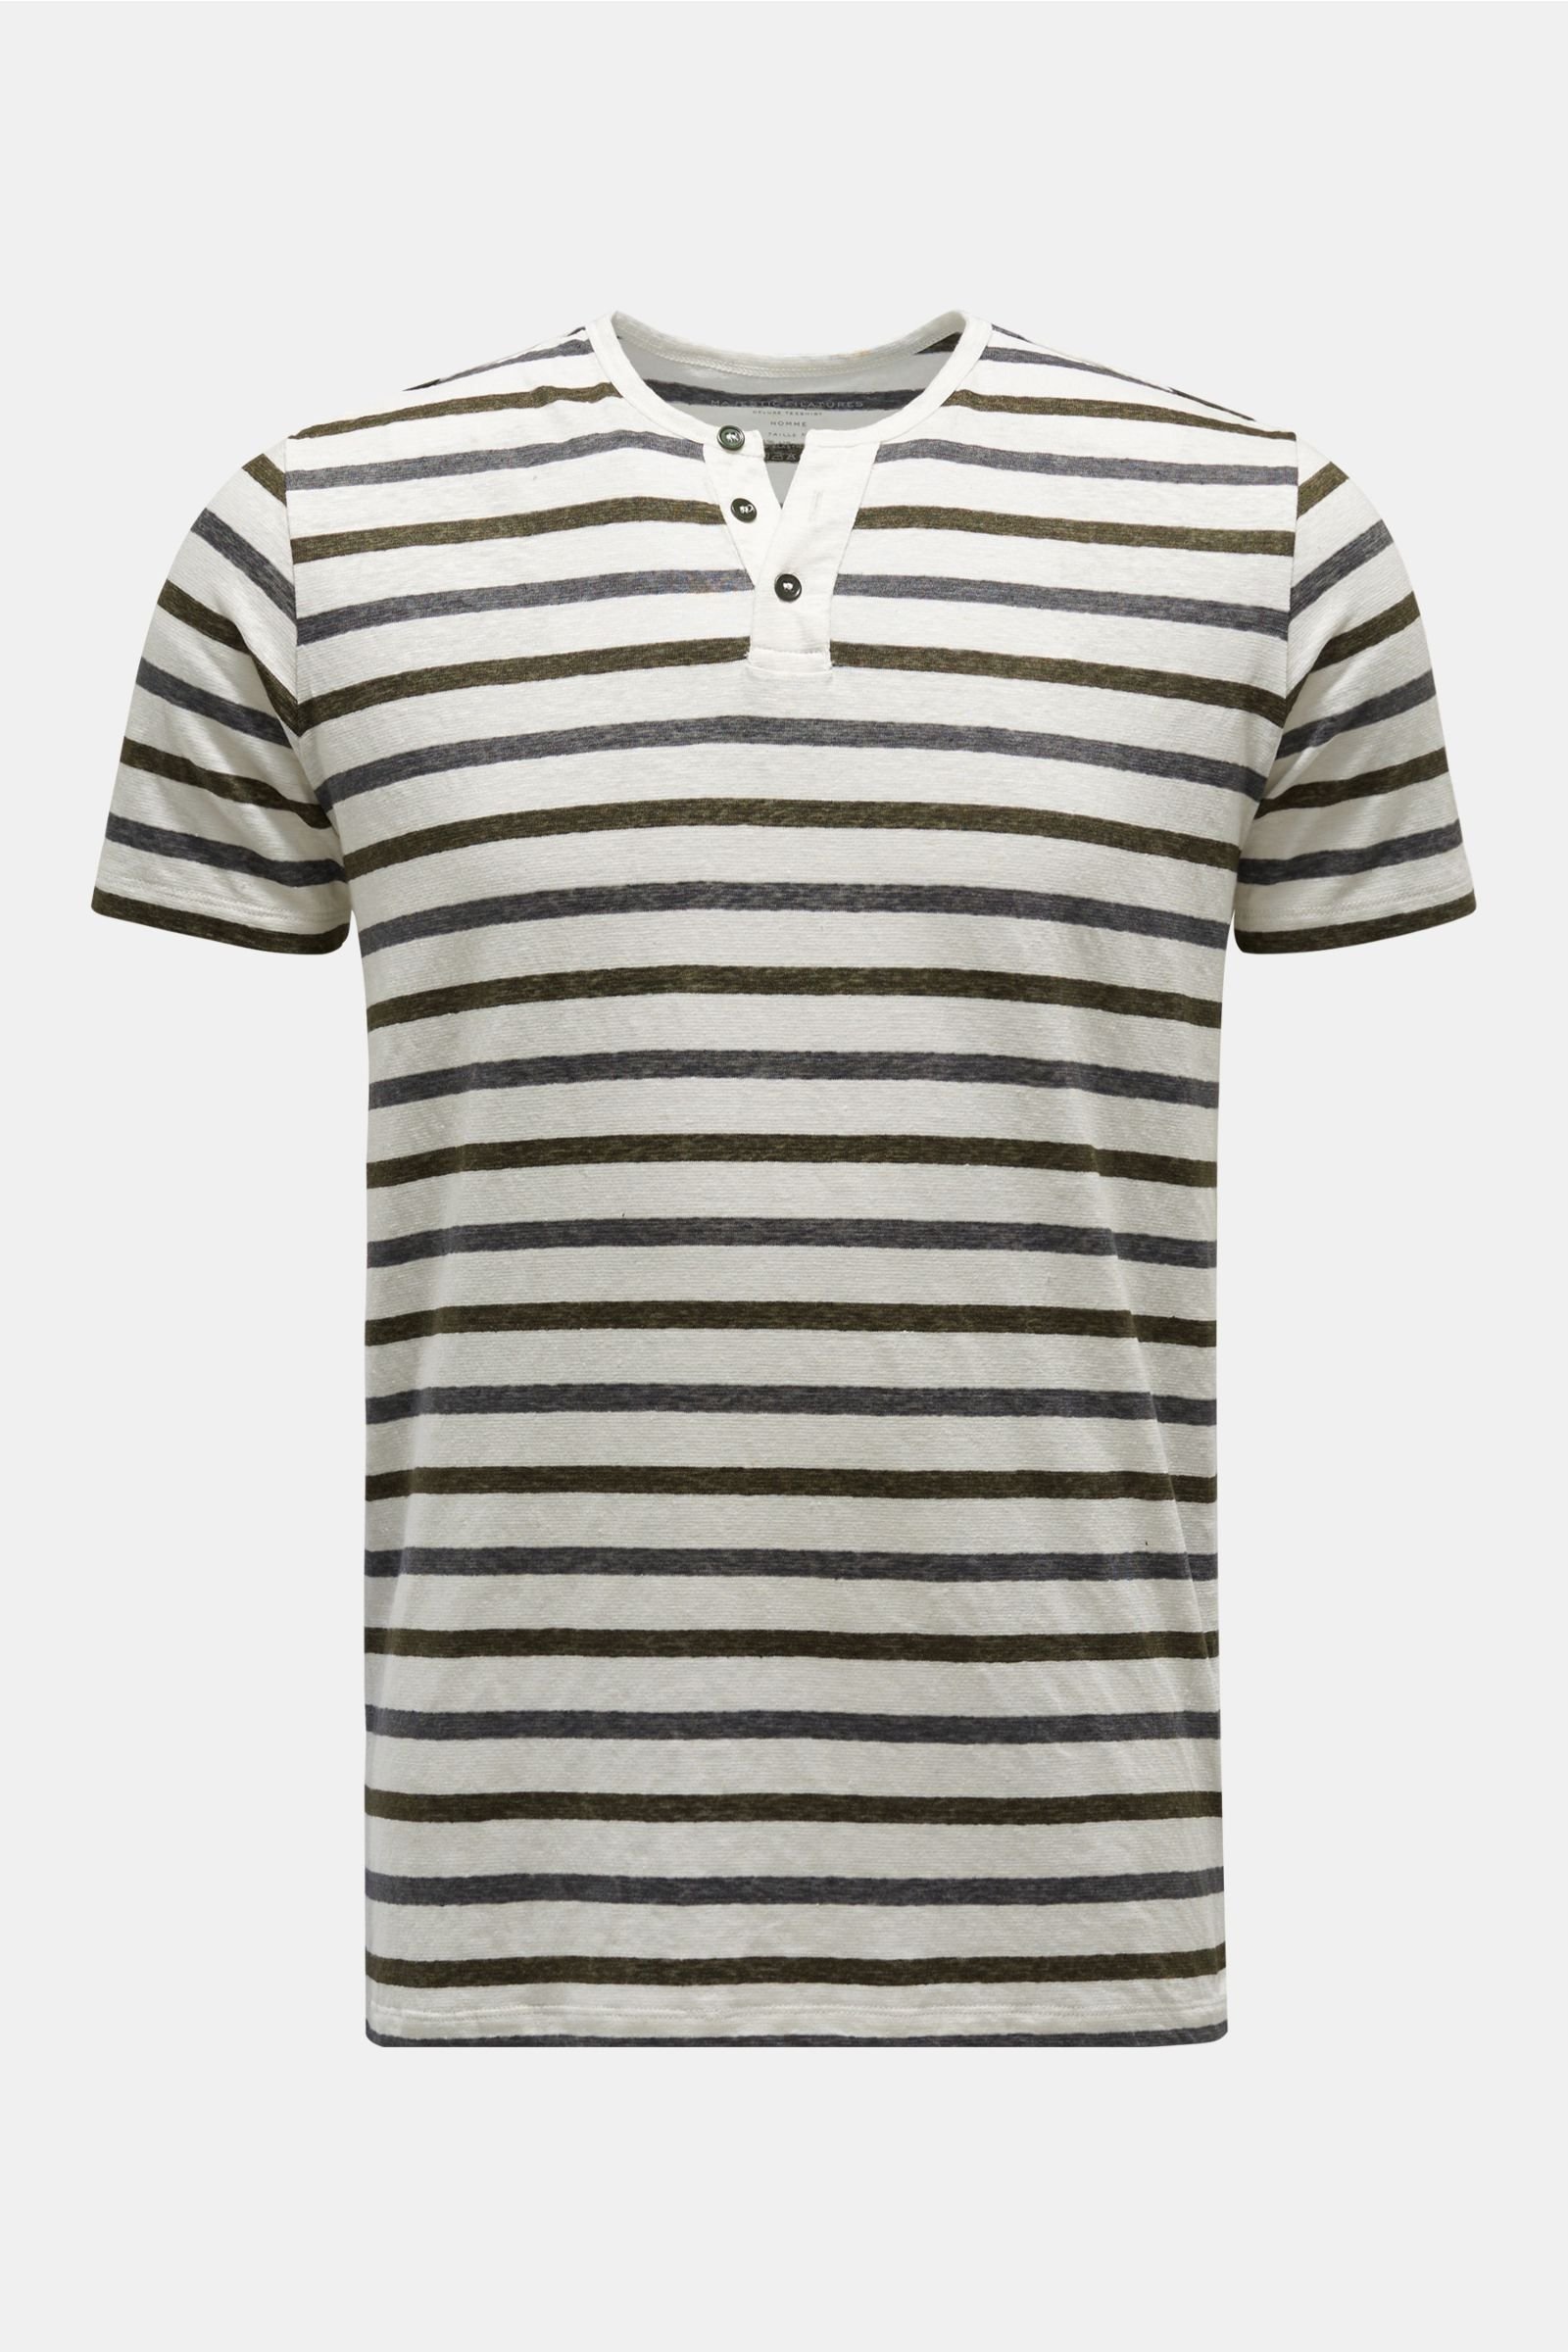 Leinen Henley-T-Shirt dunkelgrau/oliv gestreift